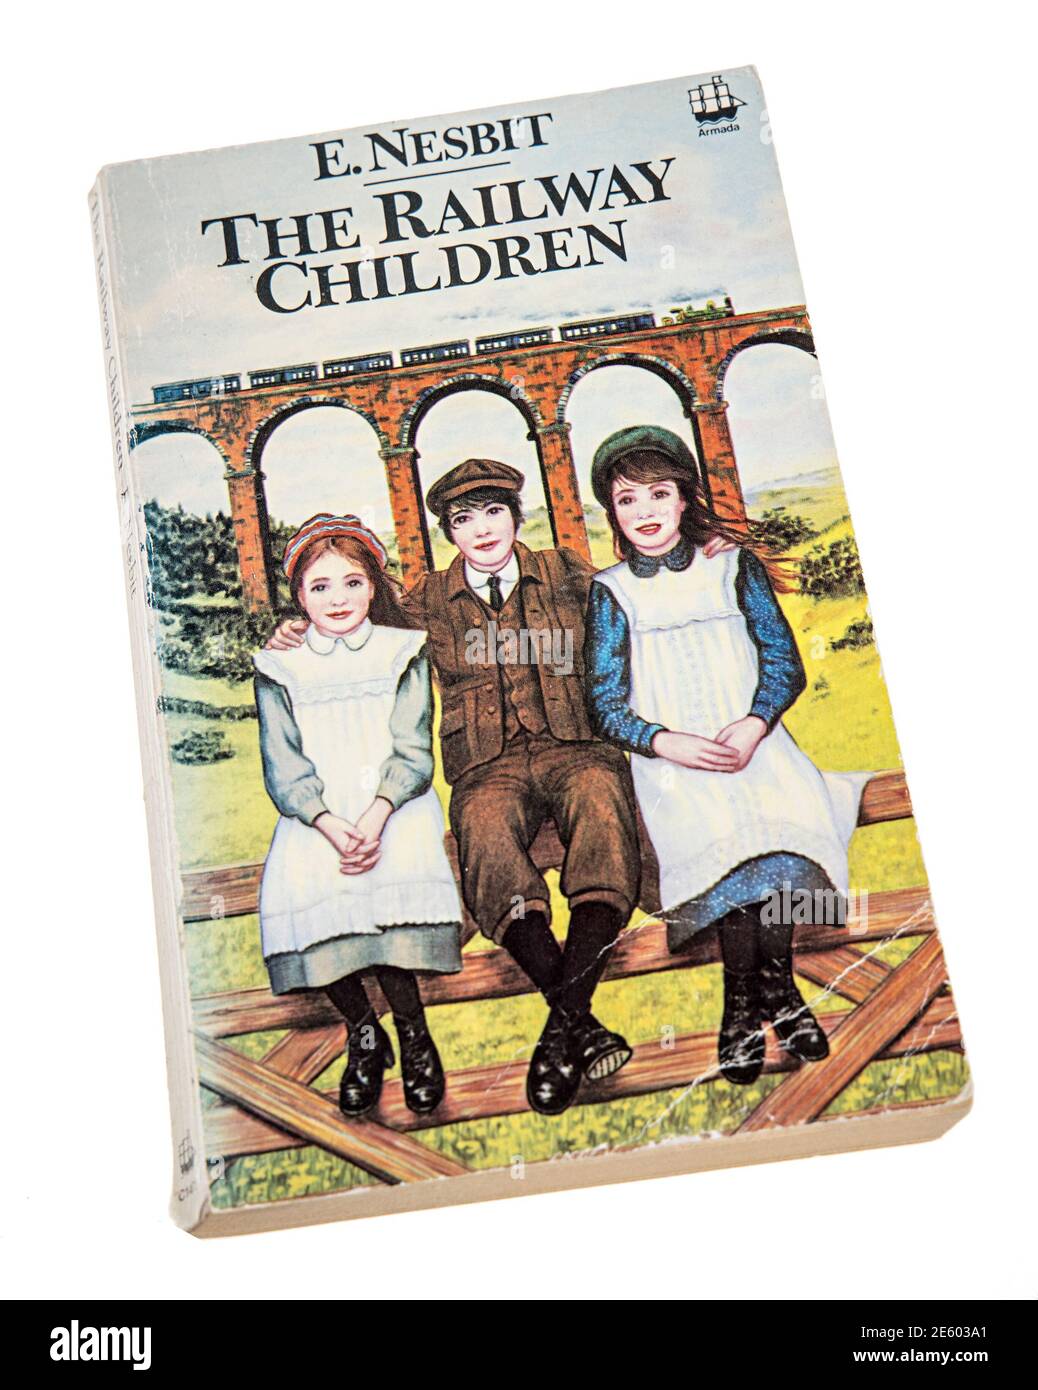 Livre de poche pour les enfants des chemins de fer publié par E. Nesbit par Armada en 1981, publié pour la première fois en 1906 Banque D'Images